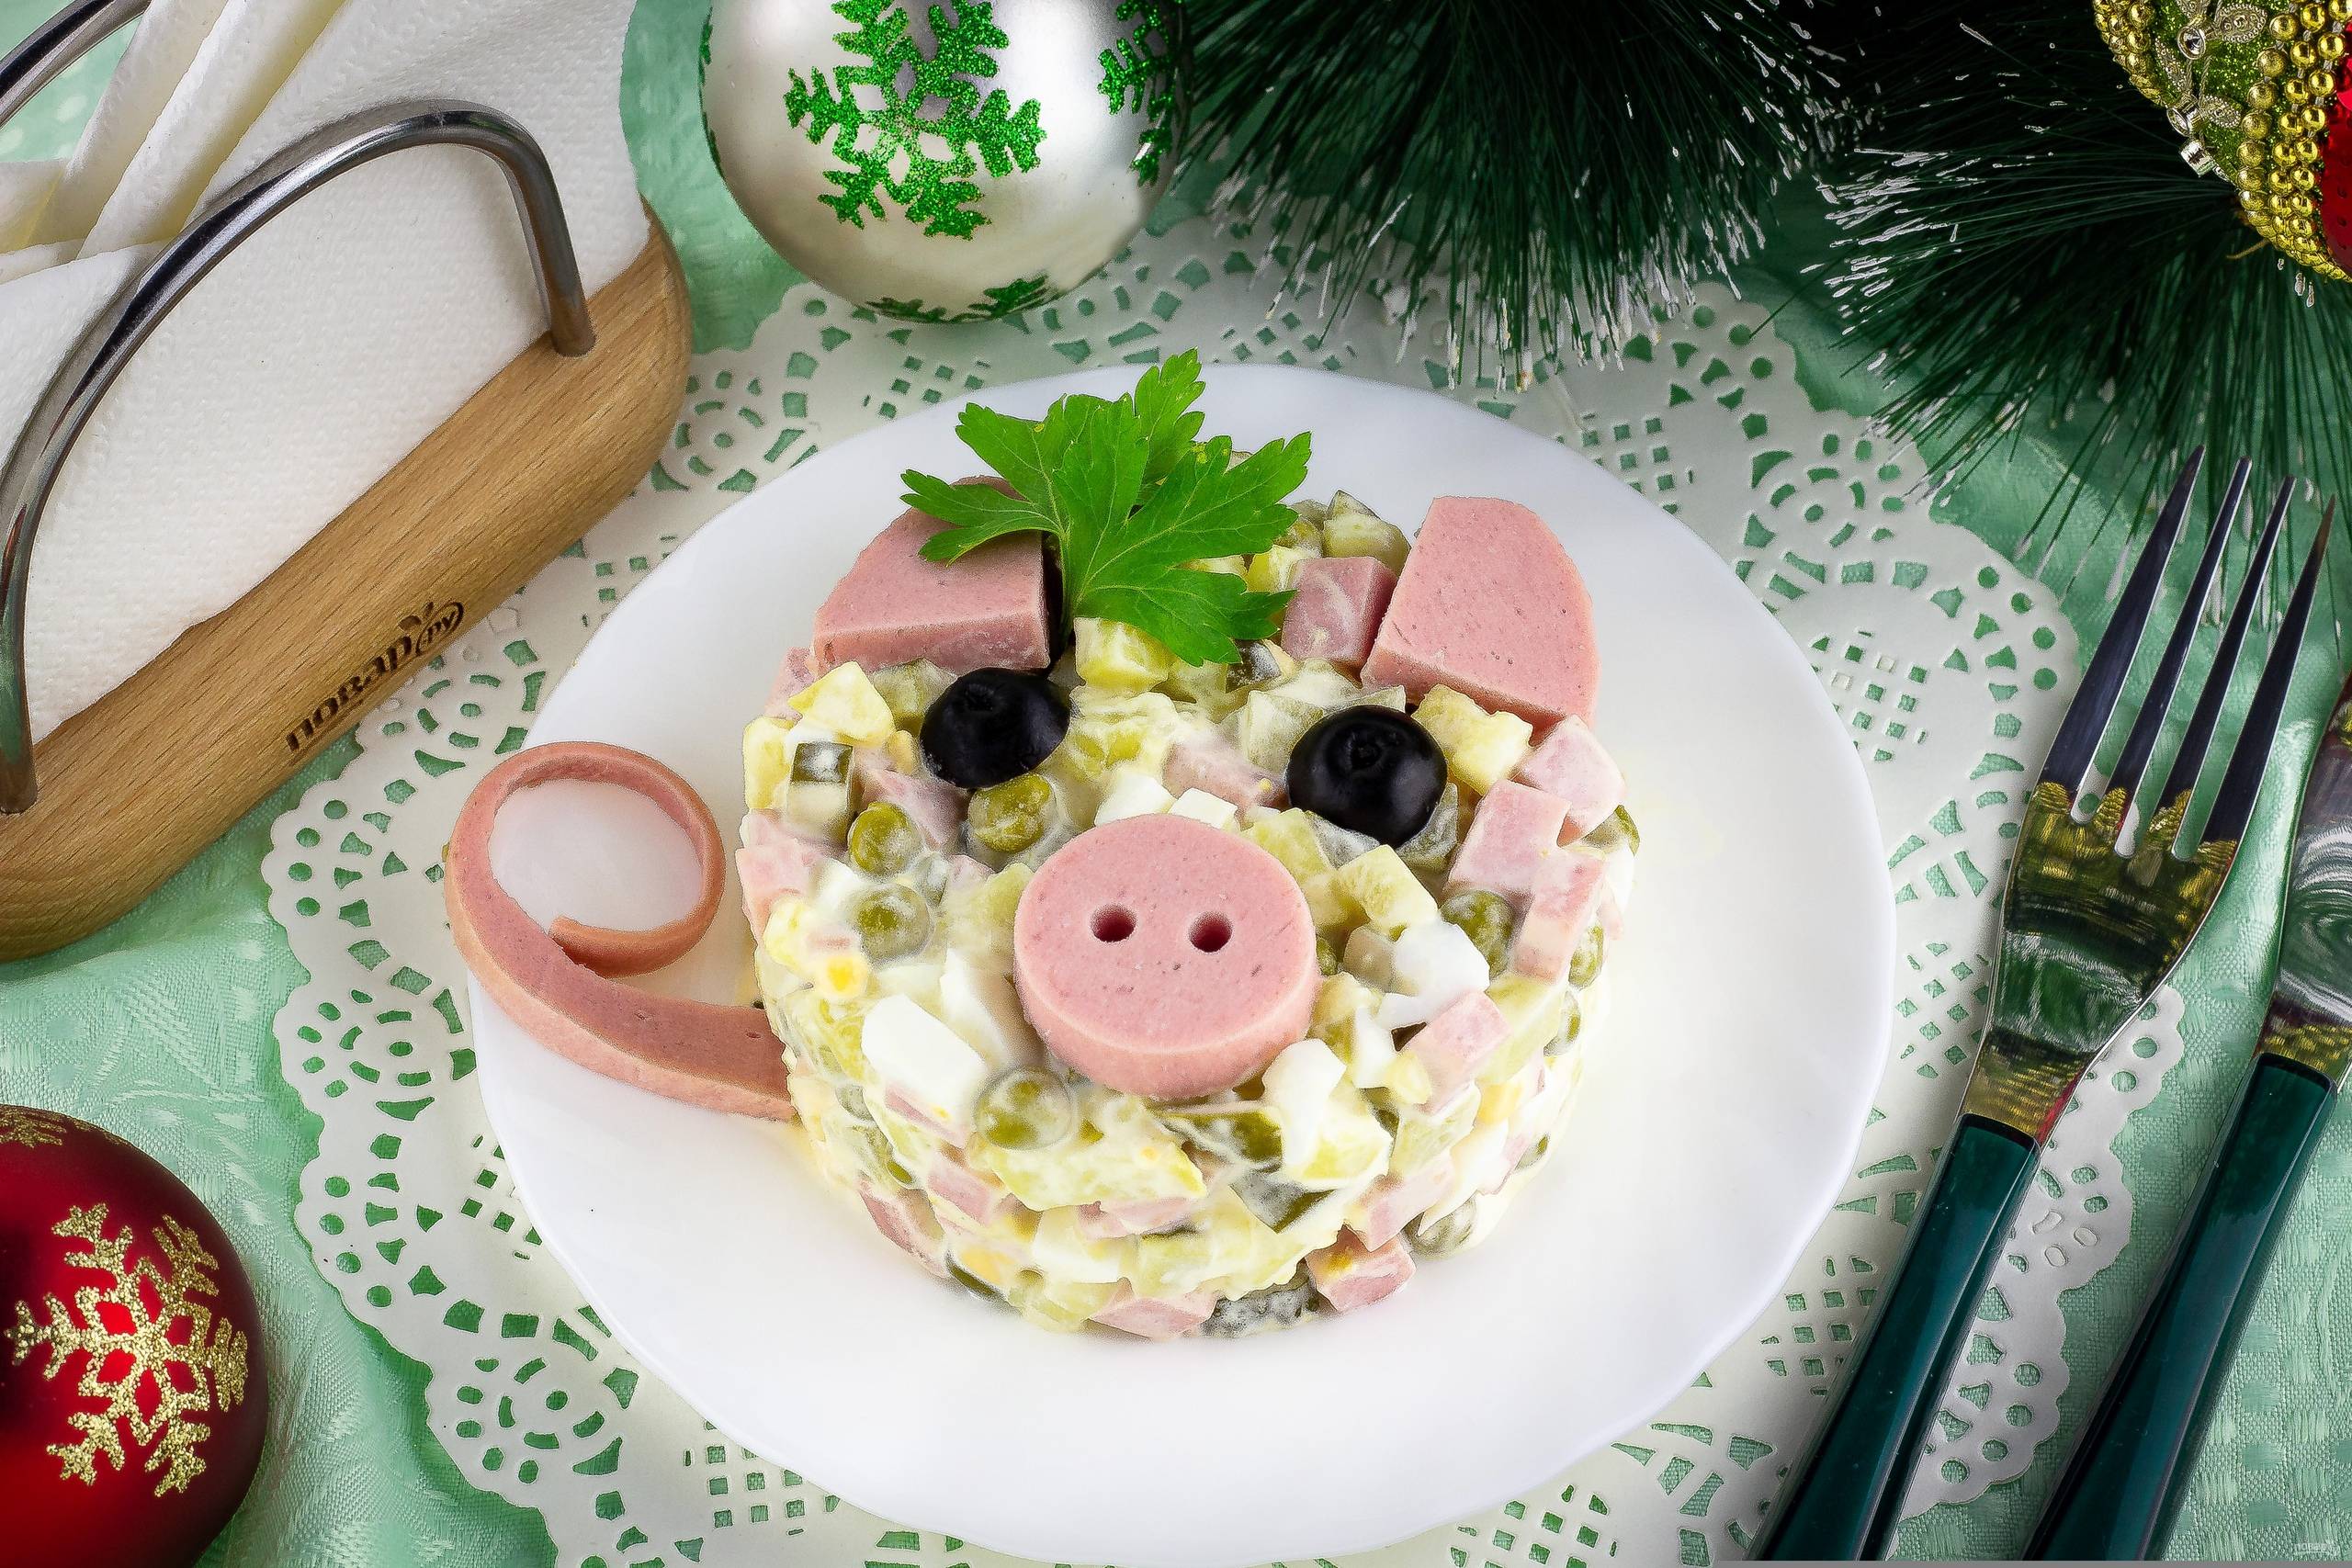 Салат в виде свиньи на новый год — 8 пошаговых рецептов